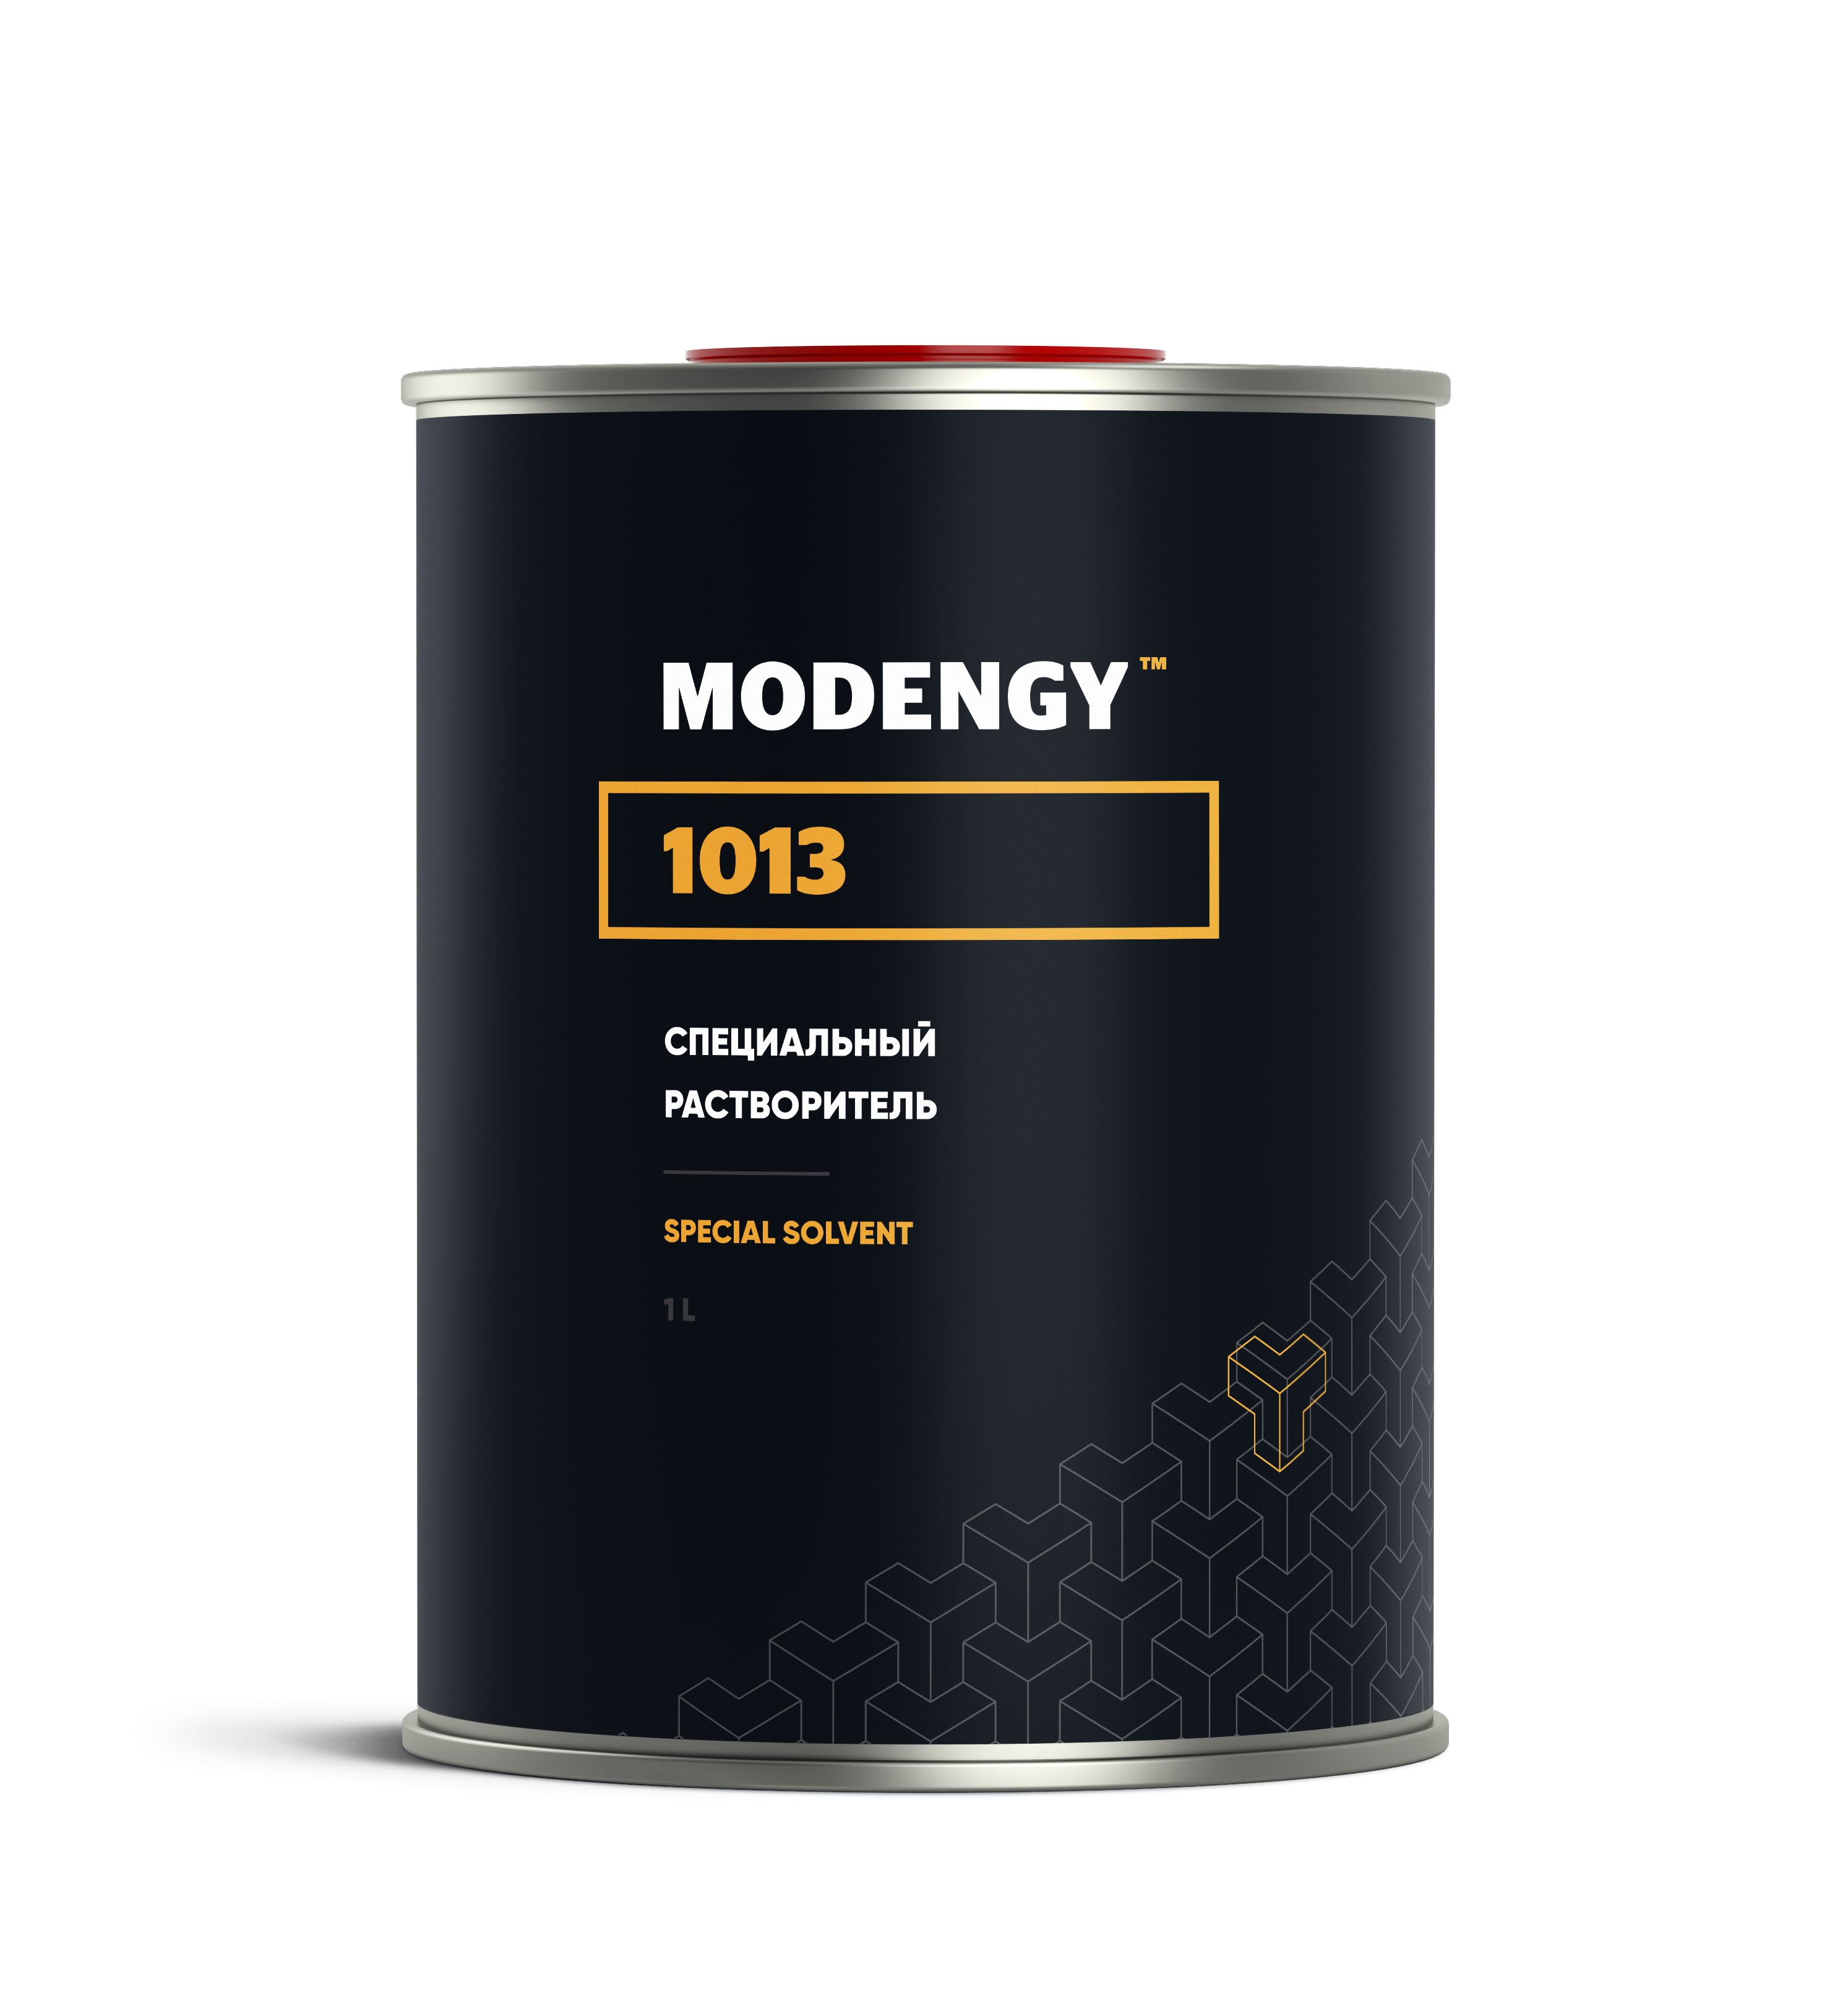 Специальный растворитель MODENGY 1013 (1 л) специальный растворитель modengy 1013 4 5 л